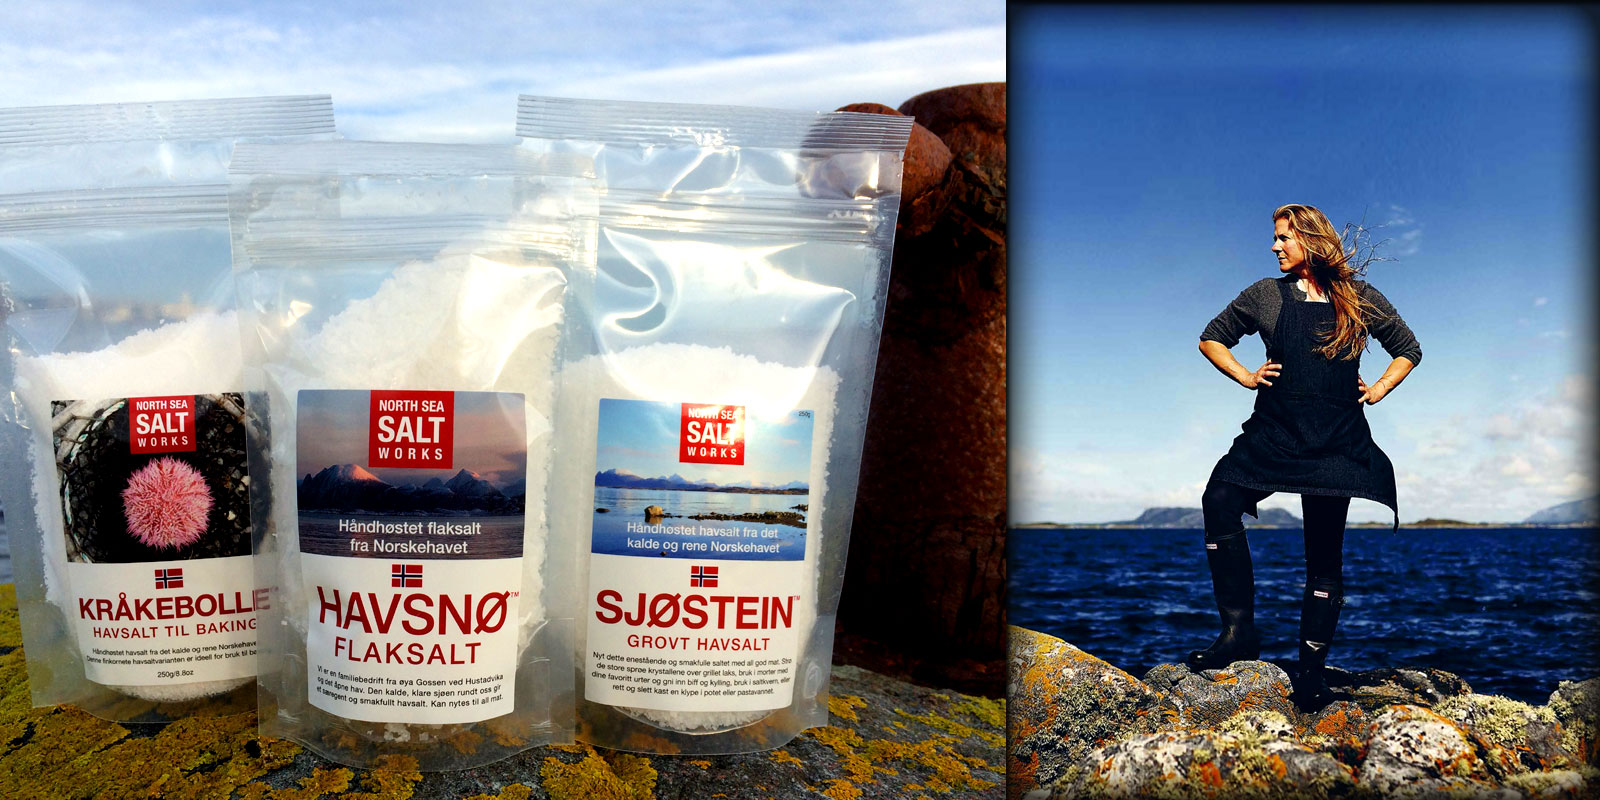 Garam HAVSNO dari Pekerjaan Garam Laut Utara HAVSNO North Sea Salt Works: Rasakan cita rasa laut melalui kemurnian produk dan produksinya, Norwegia murni.